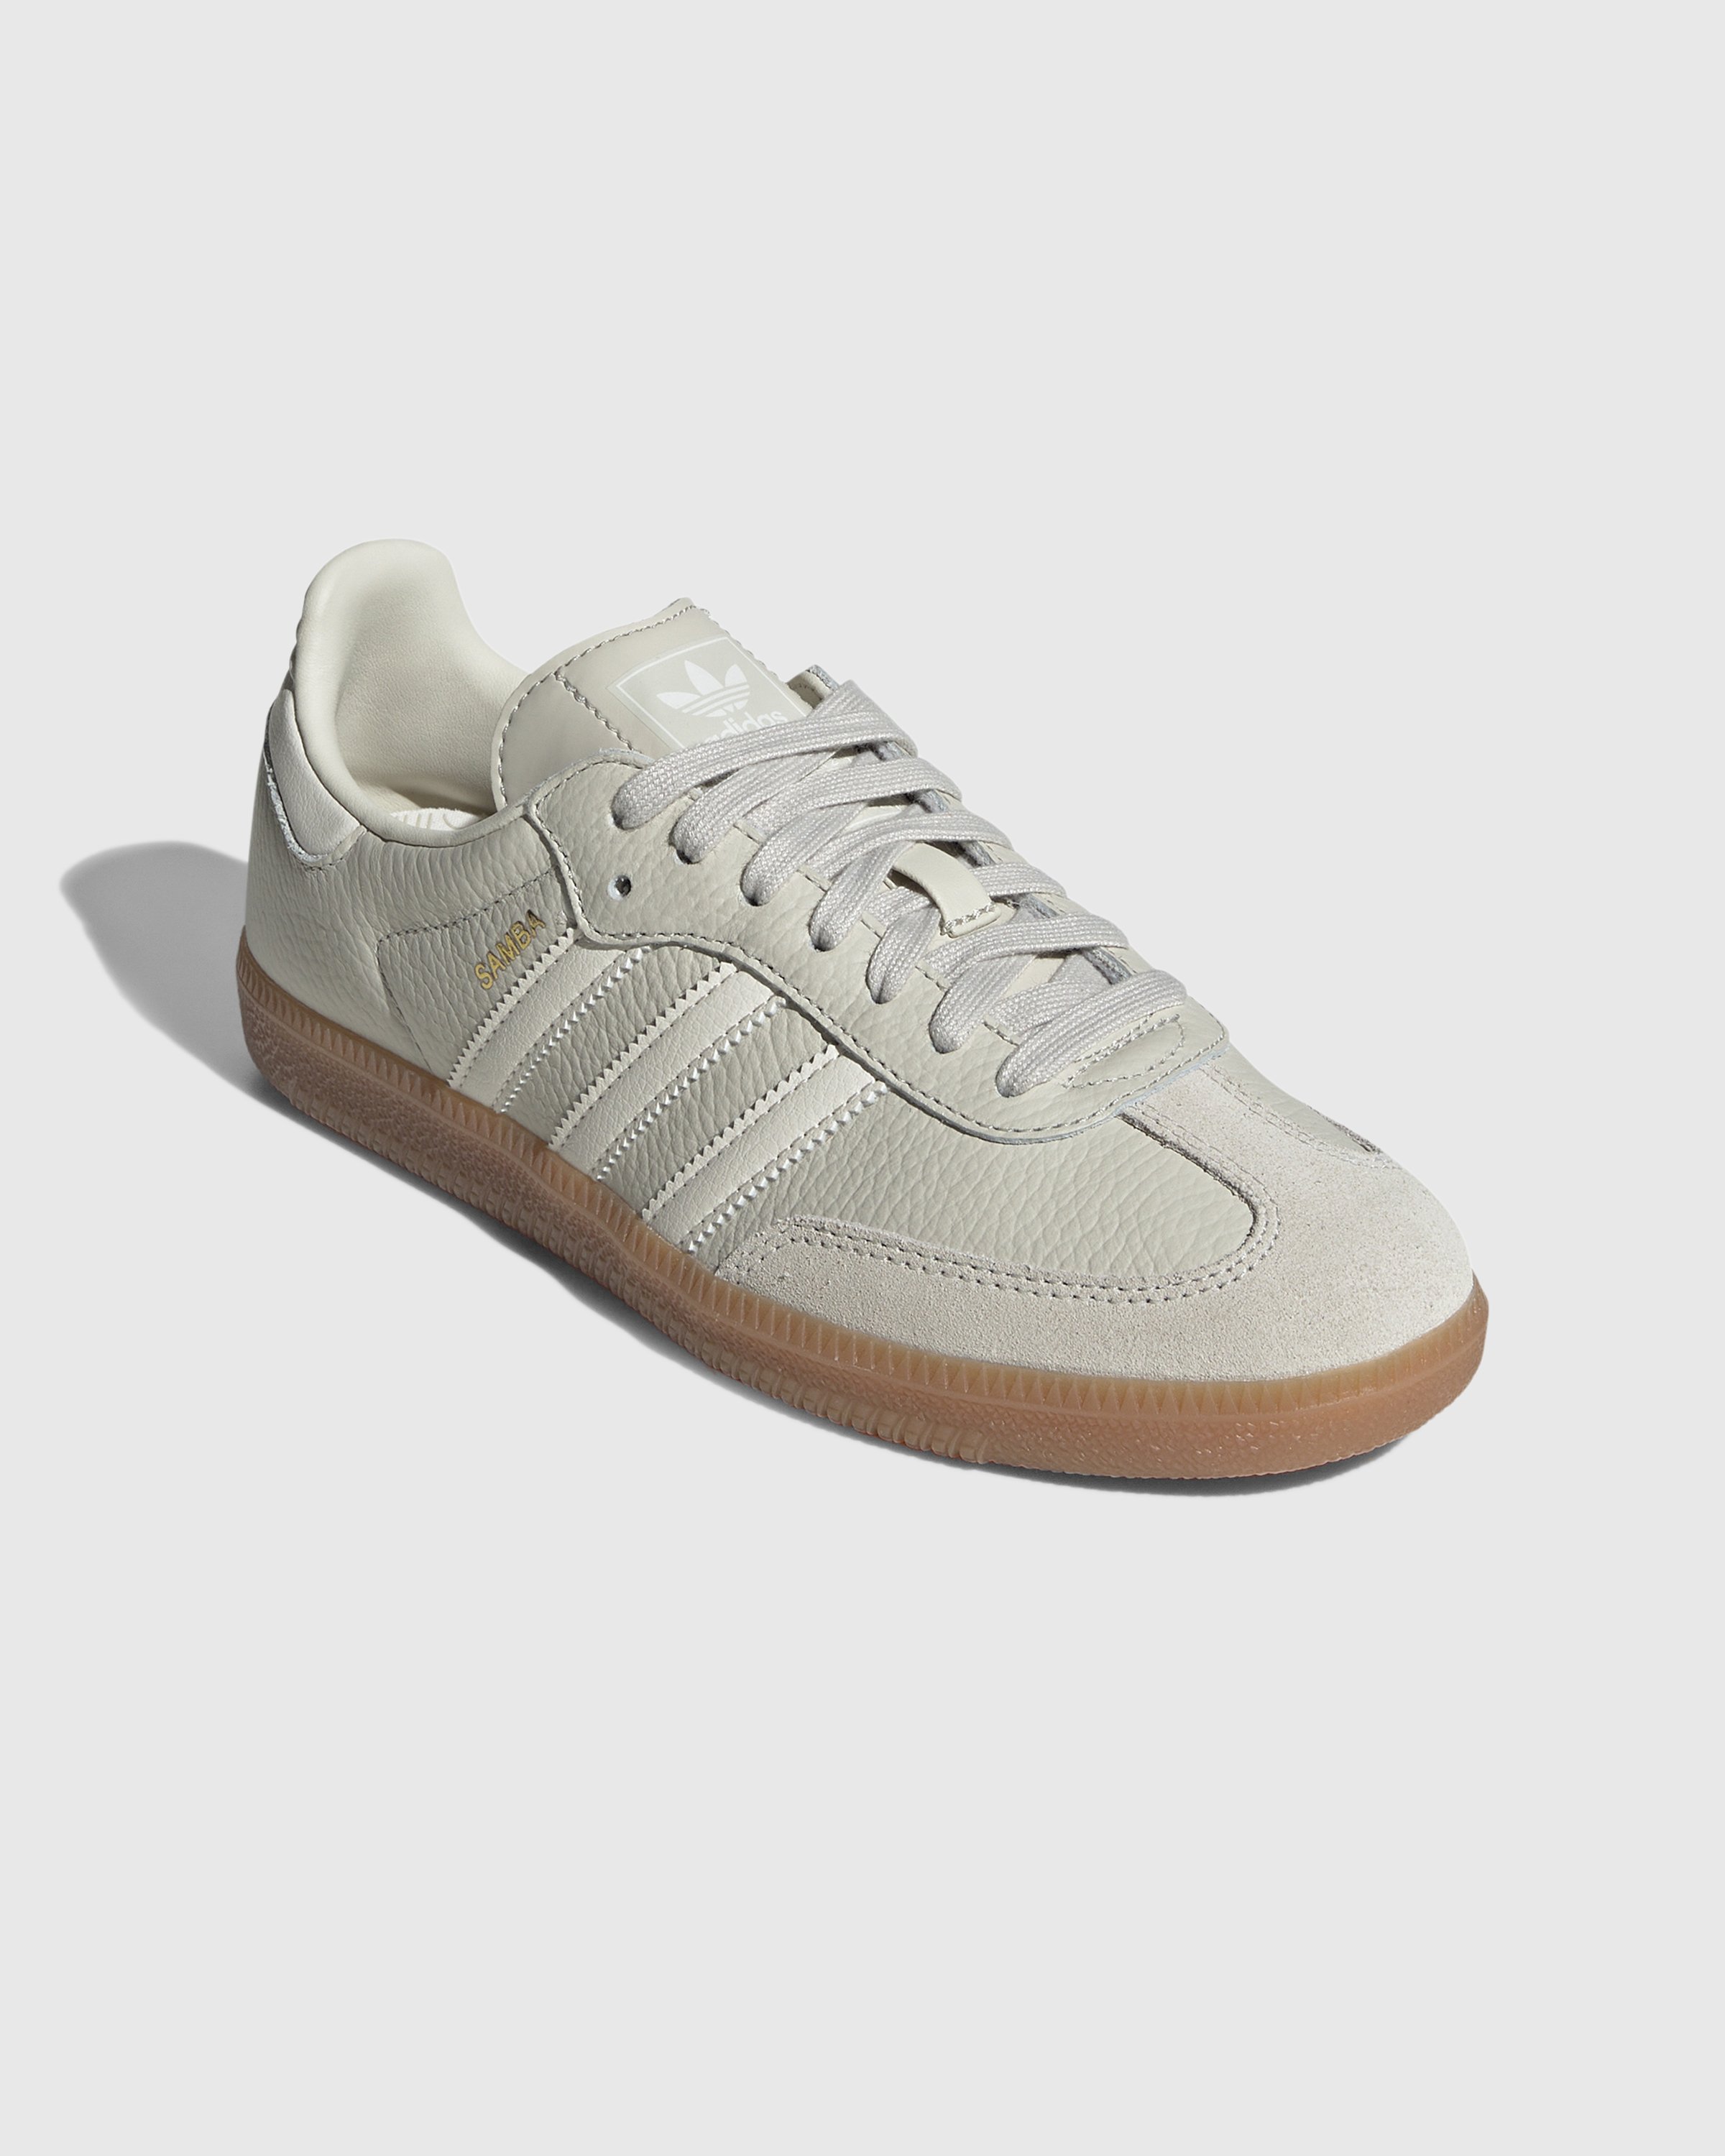 Adidas - Samba OG White Aluminium - Footwear - White - Image 3